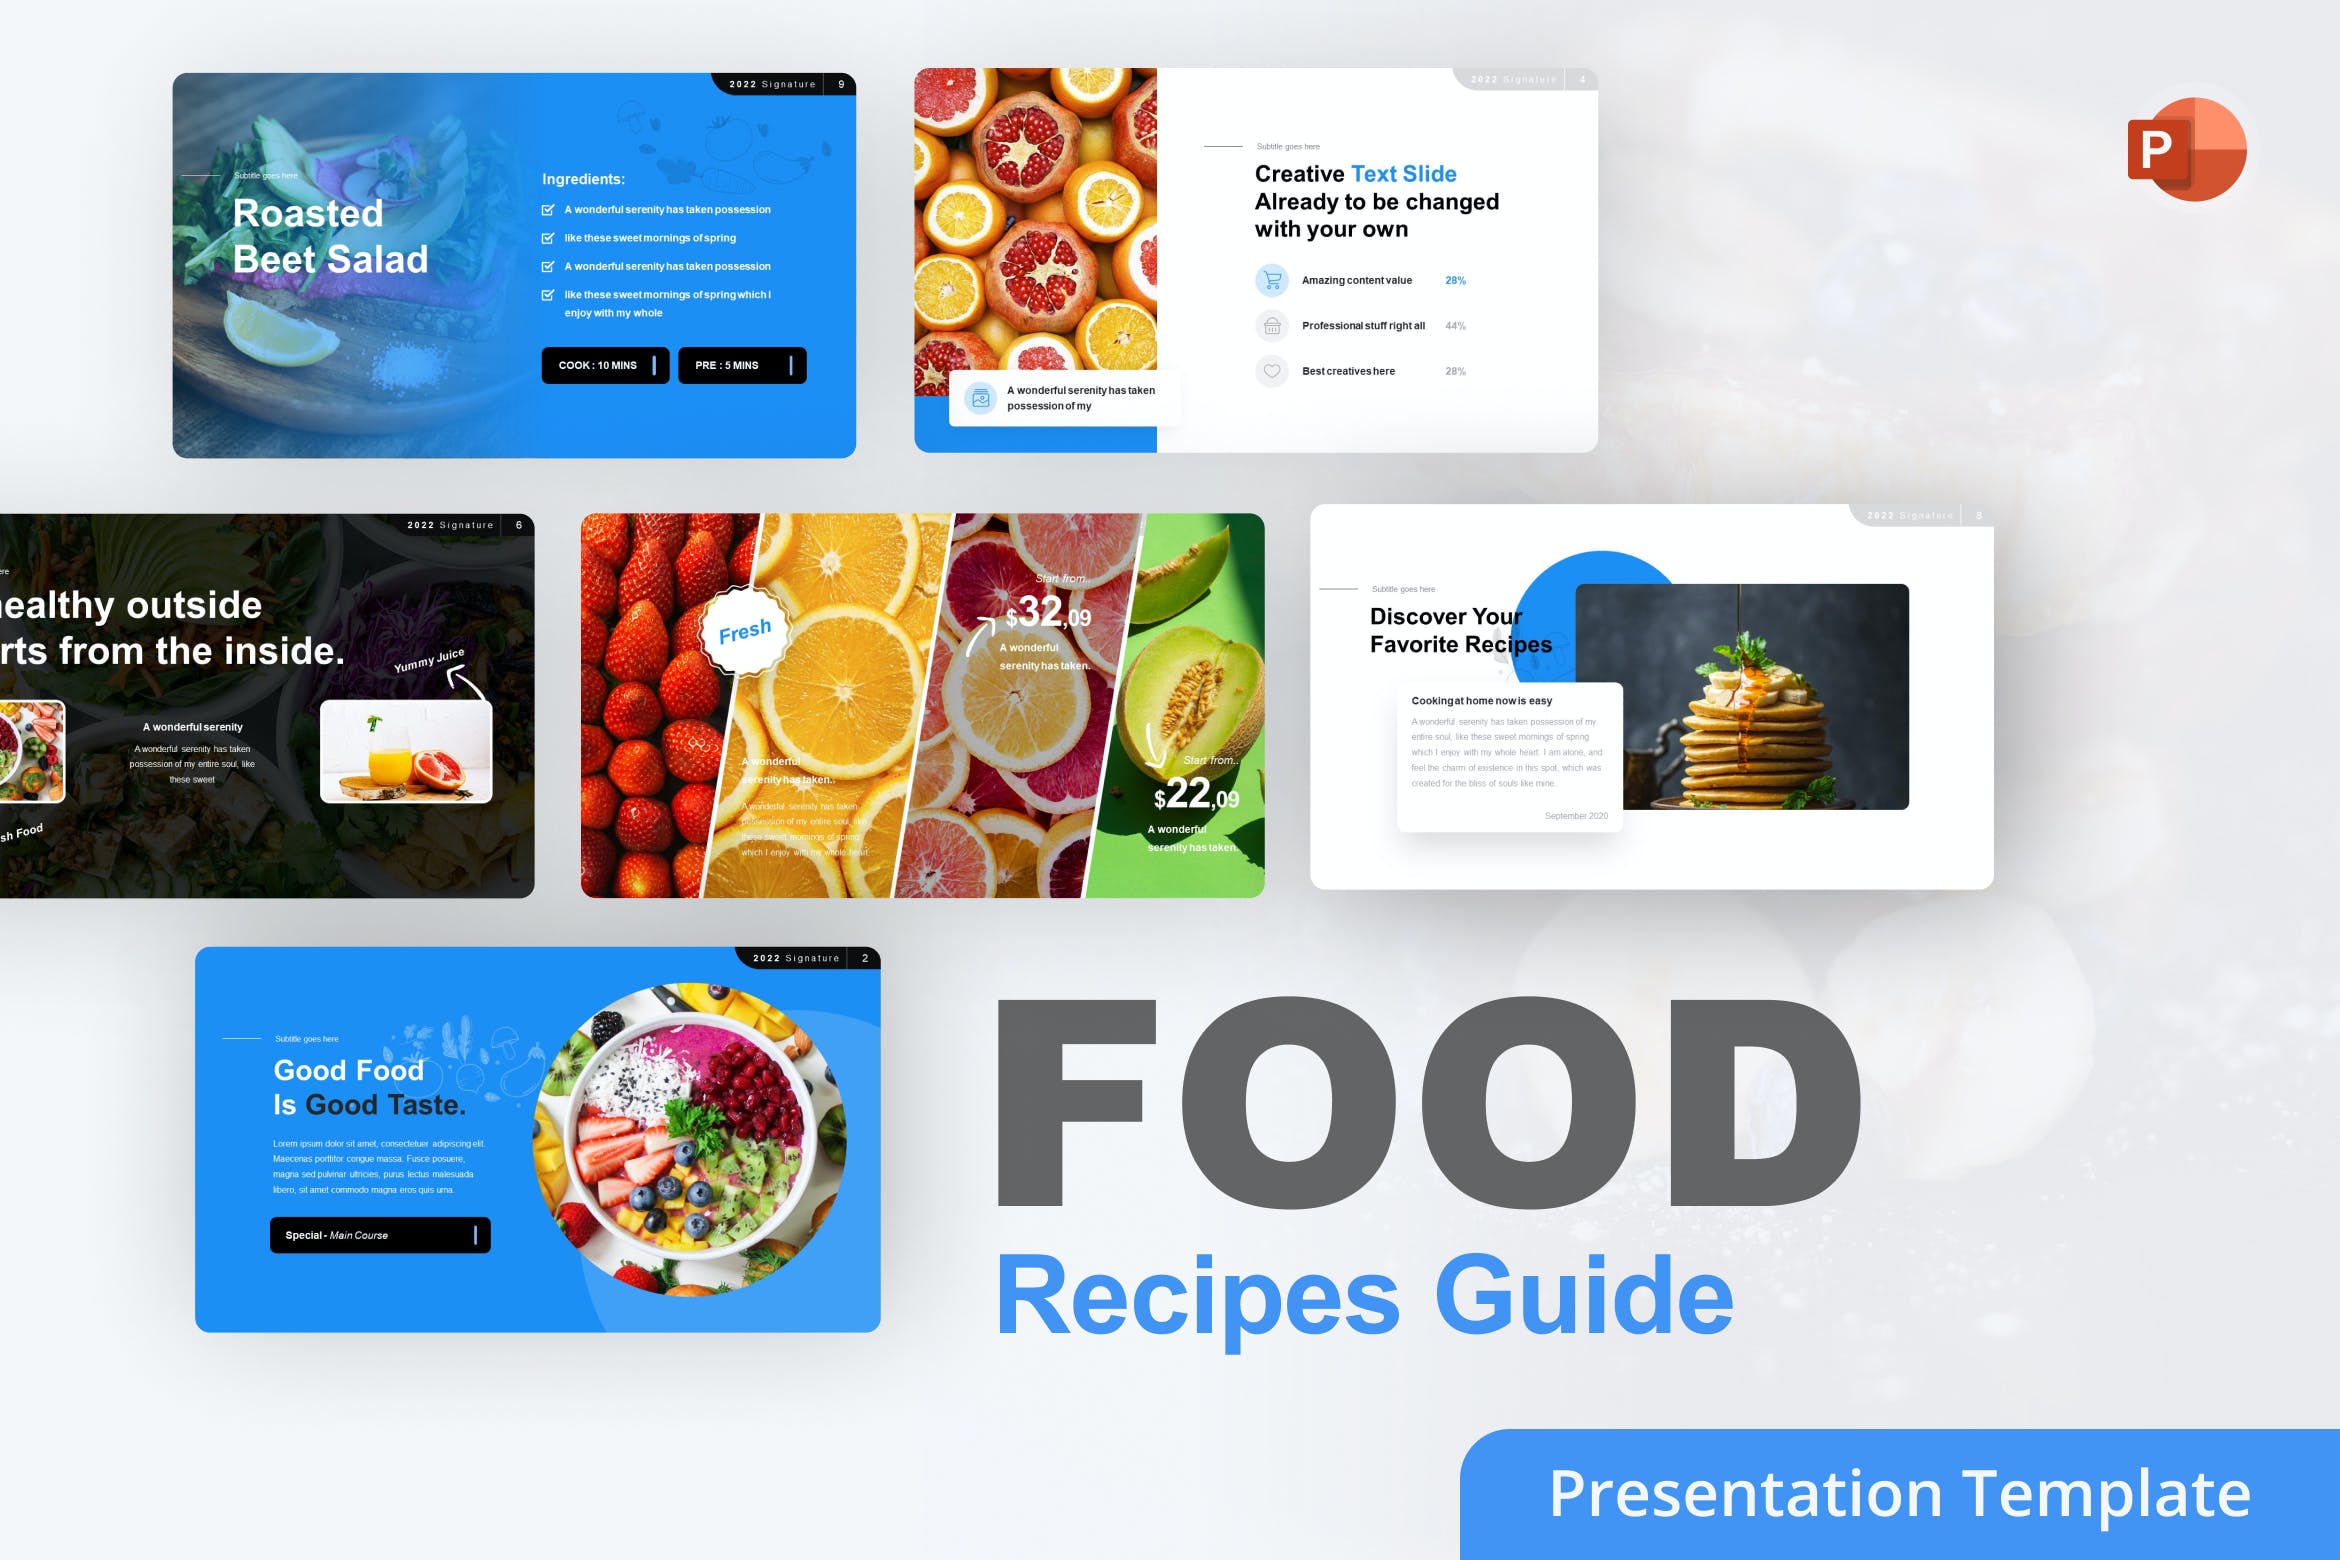 食物食谱指南PPT幻灯片模板 Food Recipes Guide PowerPoint Template 幻灯图表 第1张